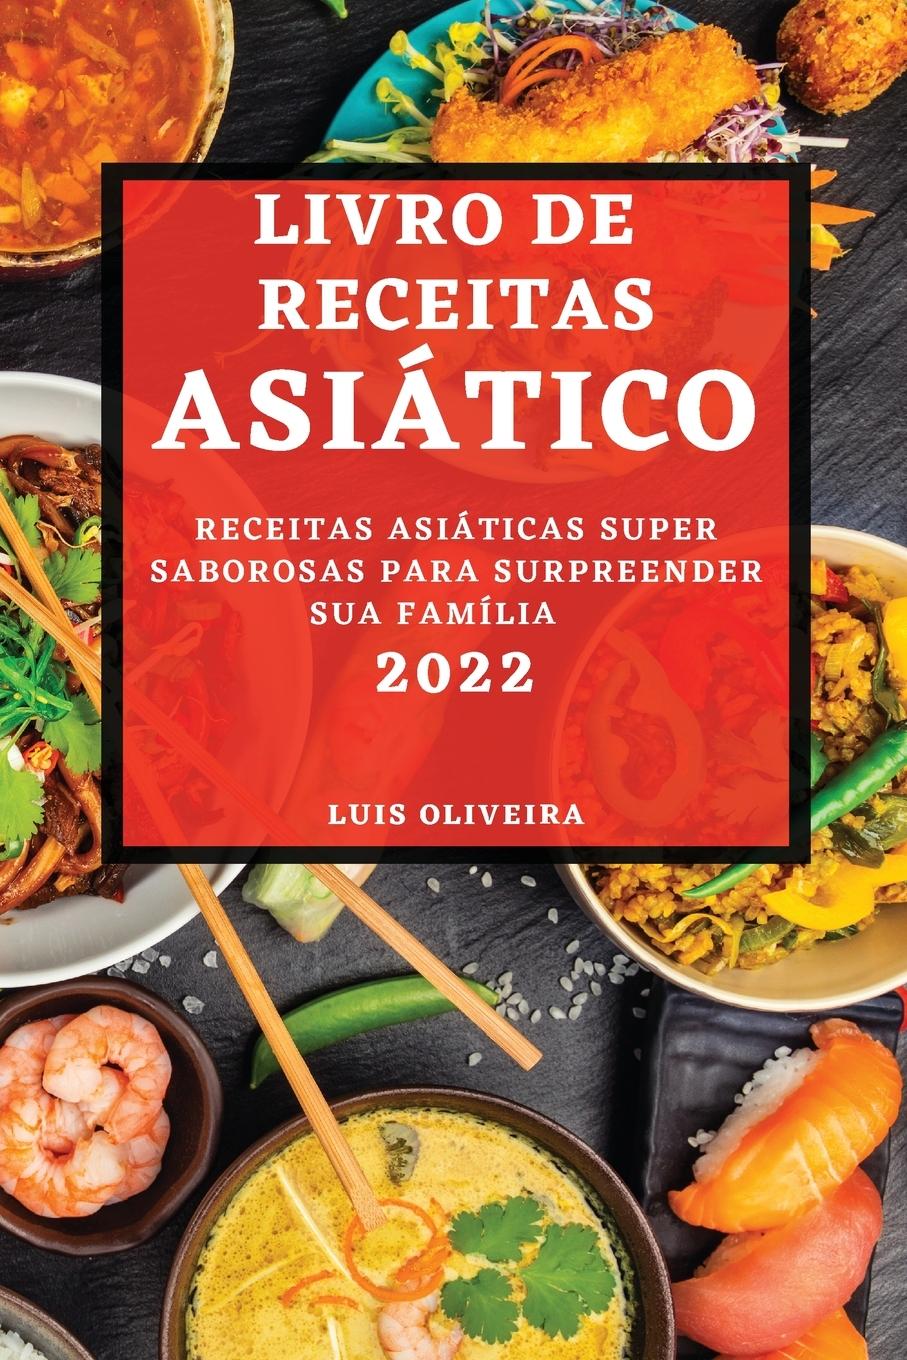 Kniha Livro de Receitas Asiatico 2022 